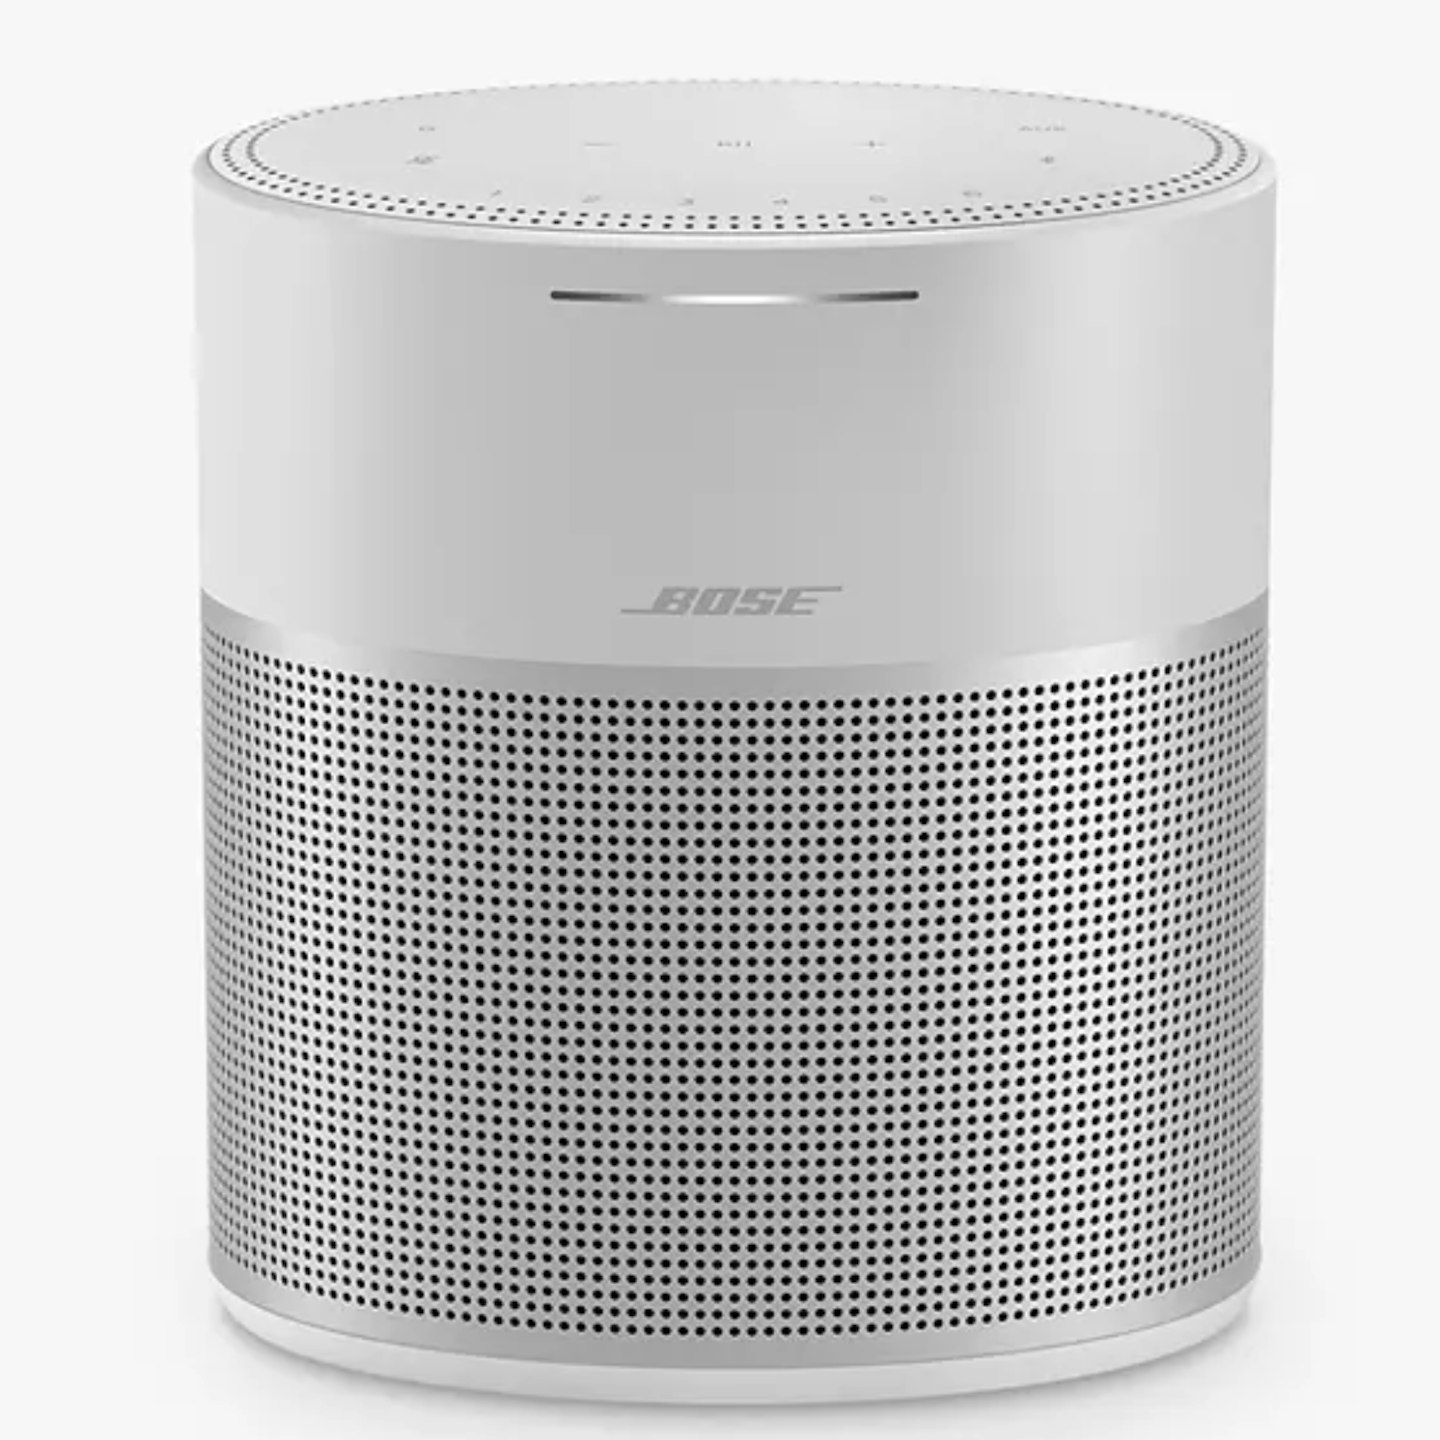 Bose Home Speaker 300, 209.00